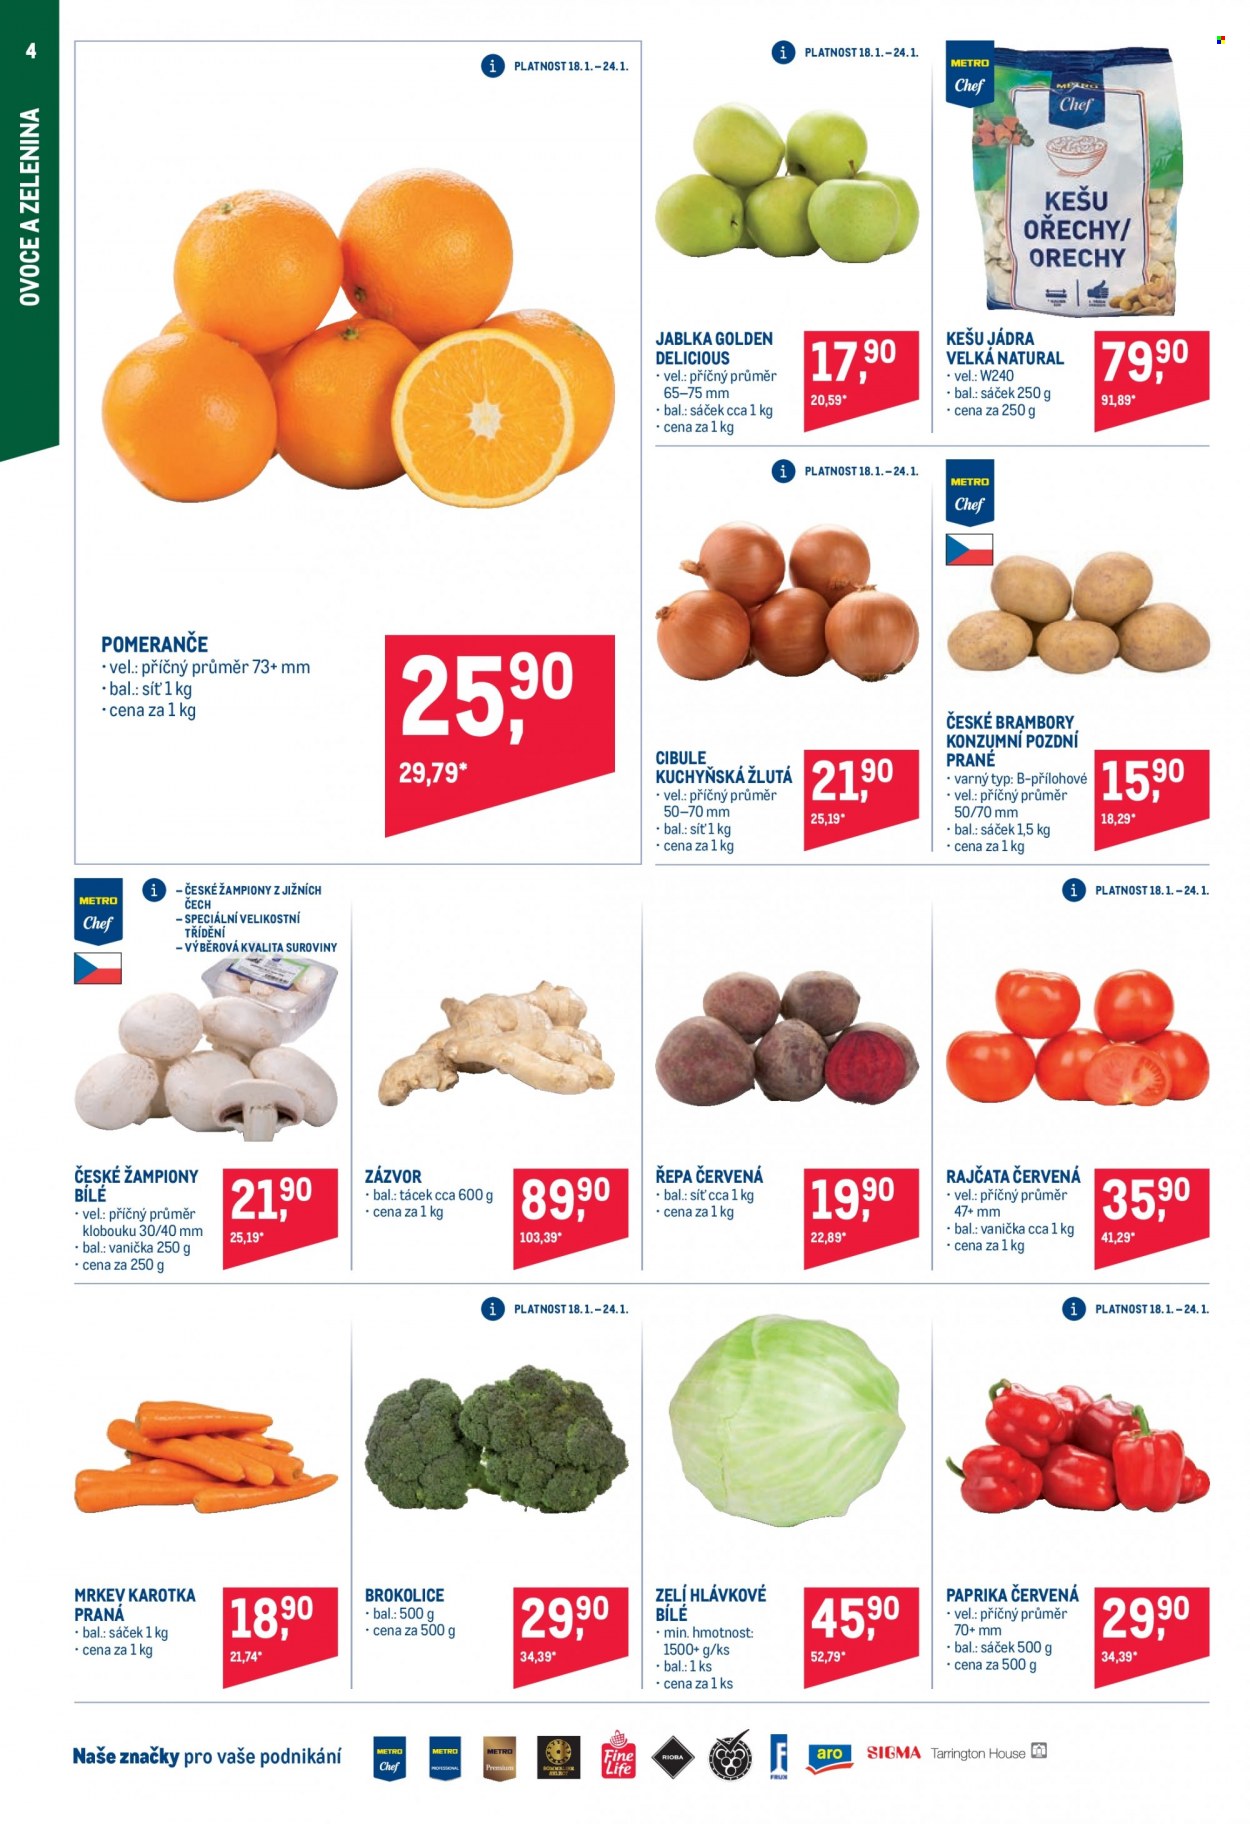 thumbnail - Leták MAKRO - 18.1.2023 - 31.1.2023 - Produkty v akci - rajčata, brambory, cibule, mrkev, paprika, zelí bílé, řepa, zelí hlávkové, zázvor, brokolice, červená paprika, jablka, pomeranče, Golden delicious, žampiony, kešu, ořechy. Strana 4.